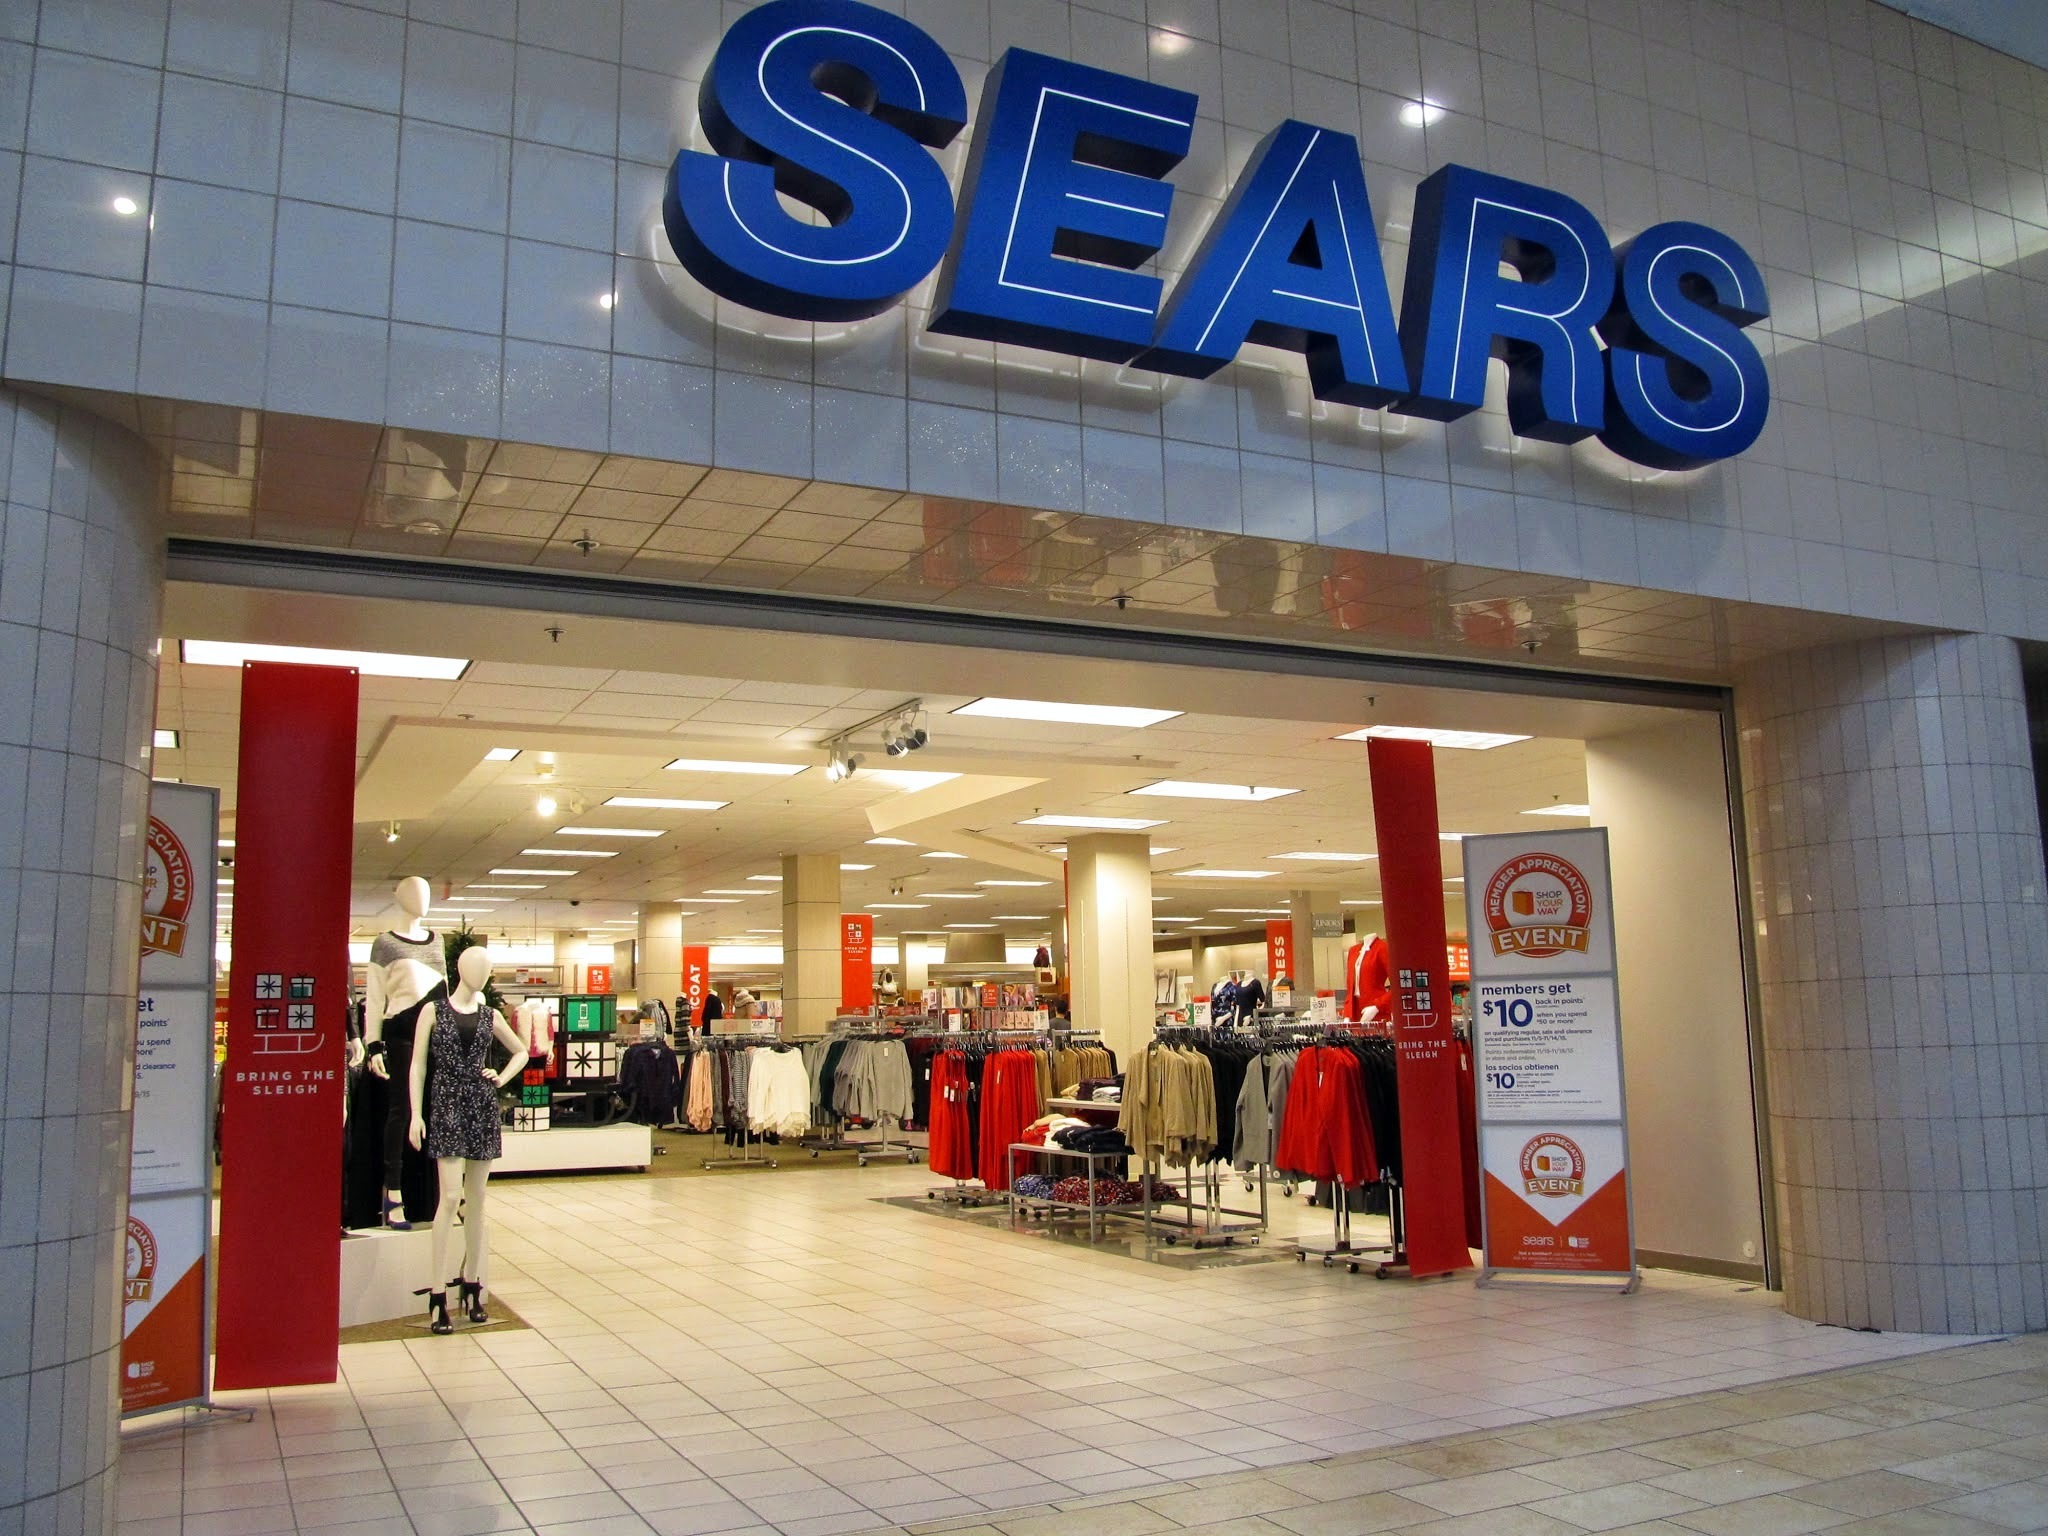 Sears entra com pedido de recuperação judicial nos EUA